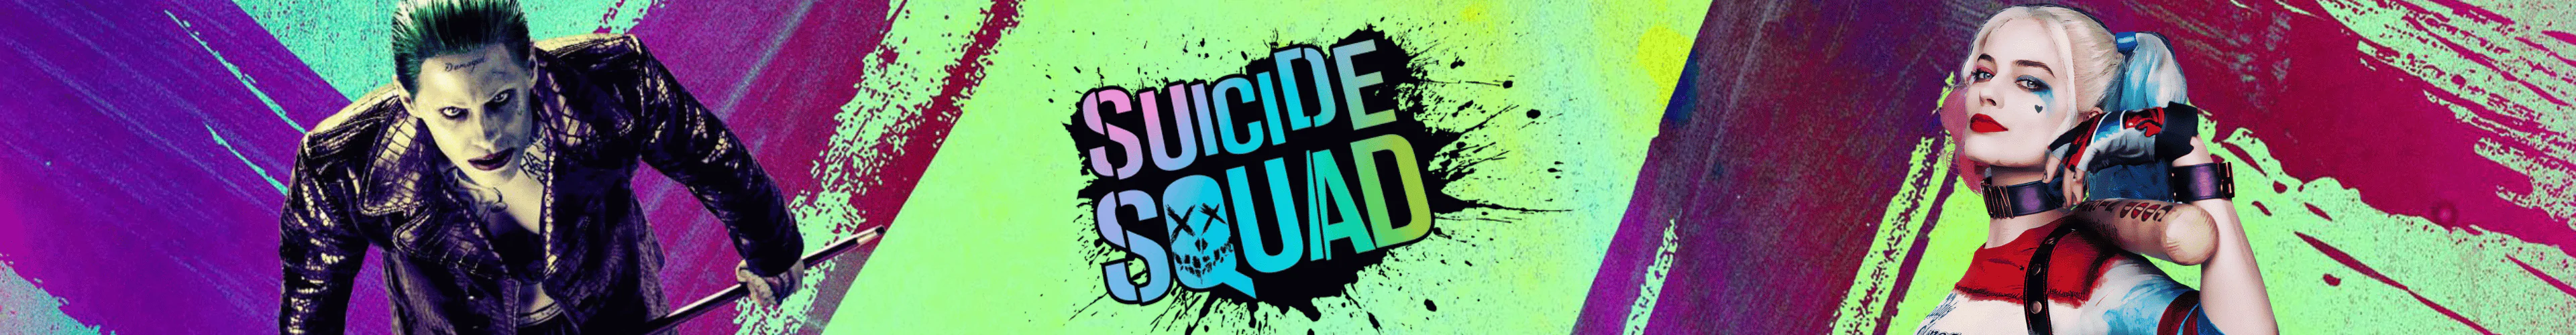 Suicide Squad taschen banner